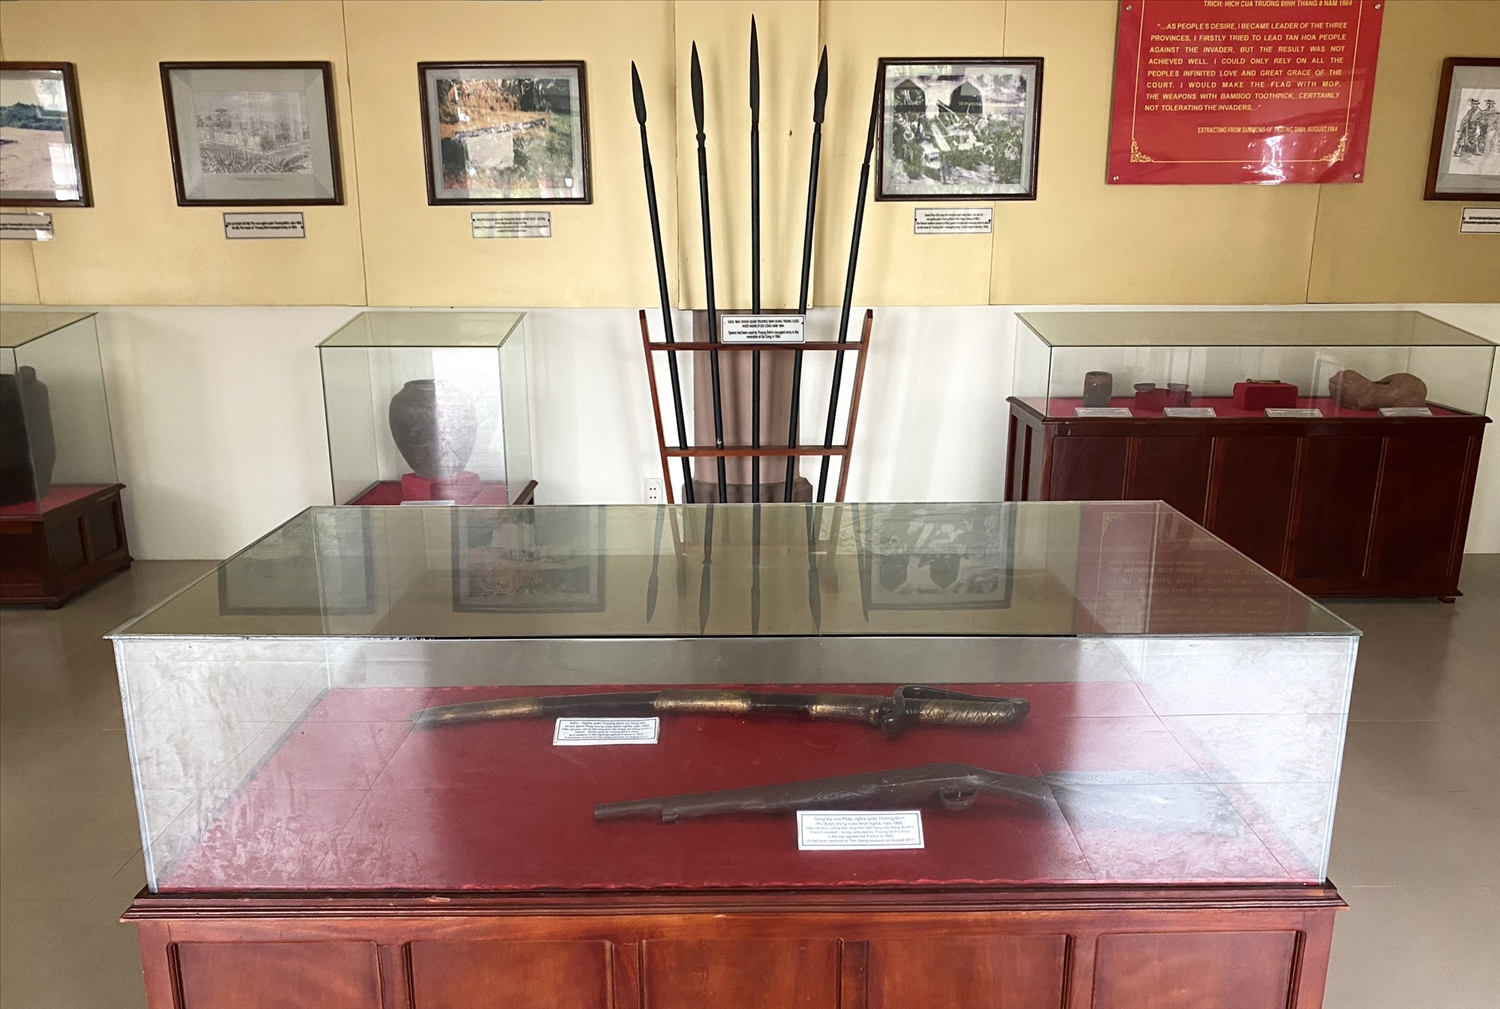 Súng và kiếm được trưng bày liên quan đến trận đánh giặc Pháp năm 1862 của Anh hùng dân tộc Trương Định